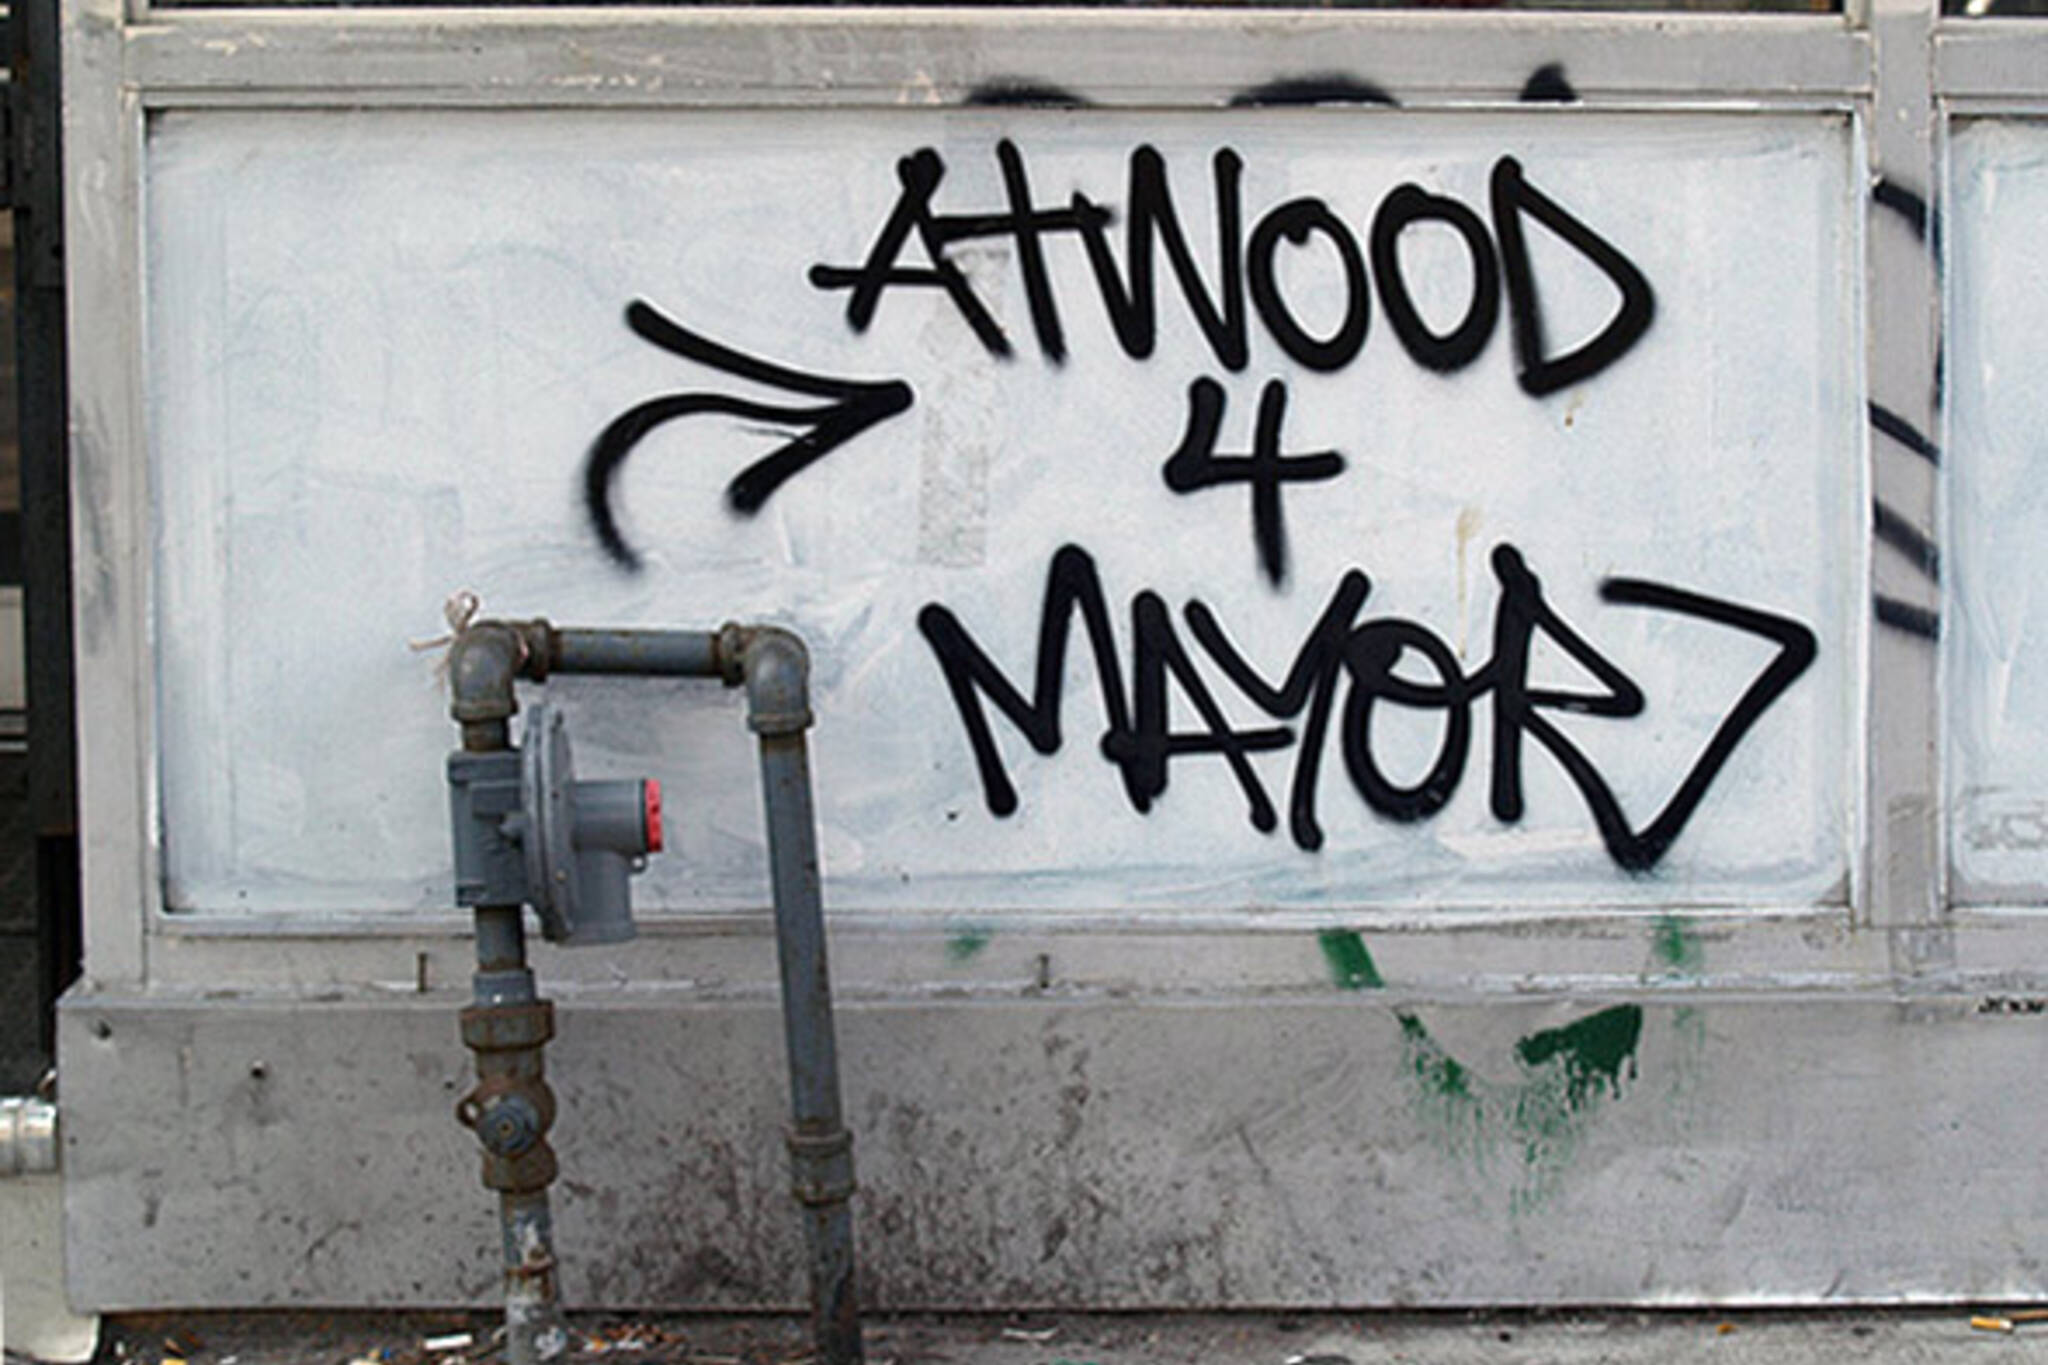 Margaret Atwood Toronto Mayor